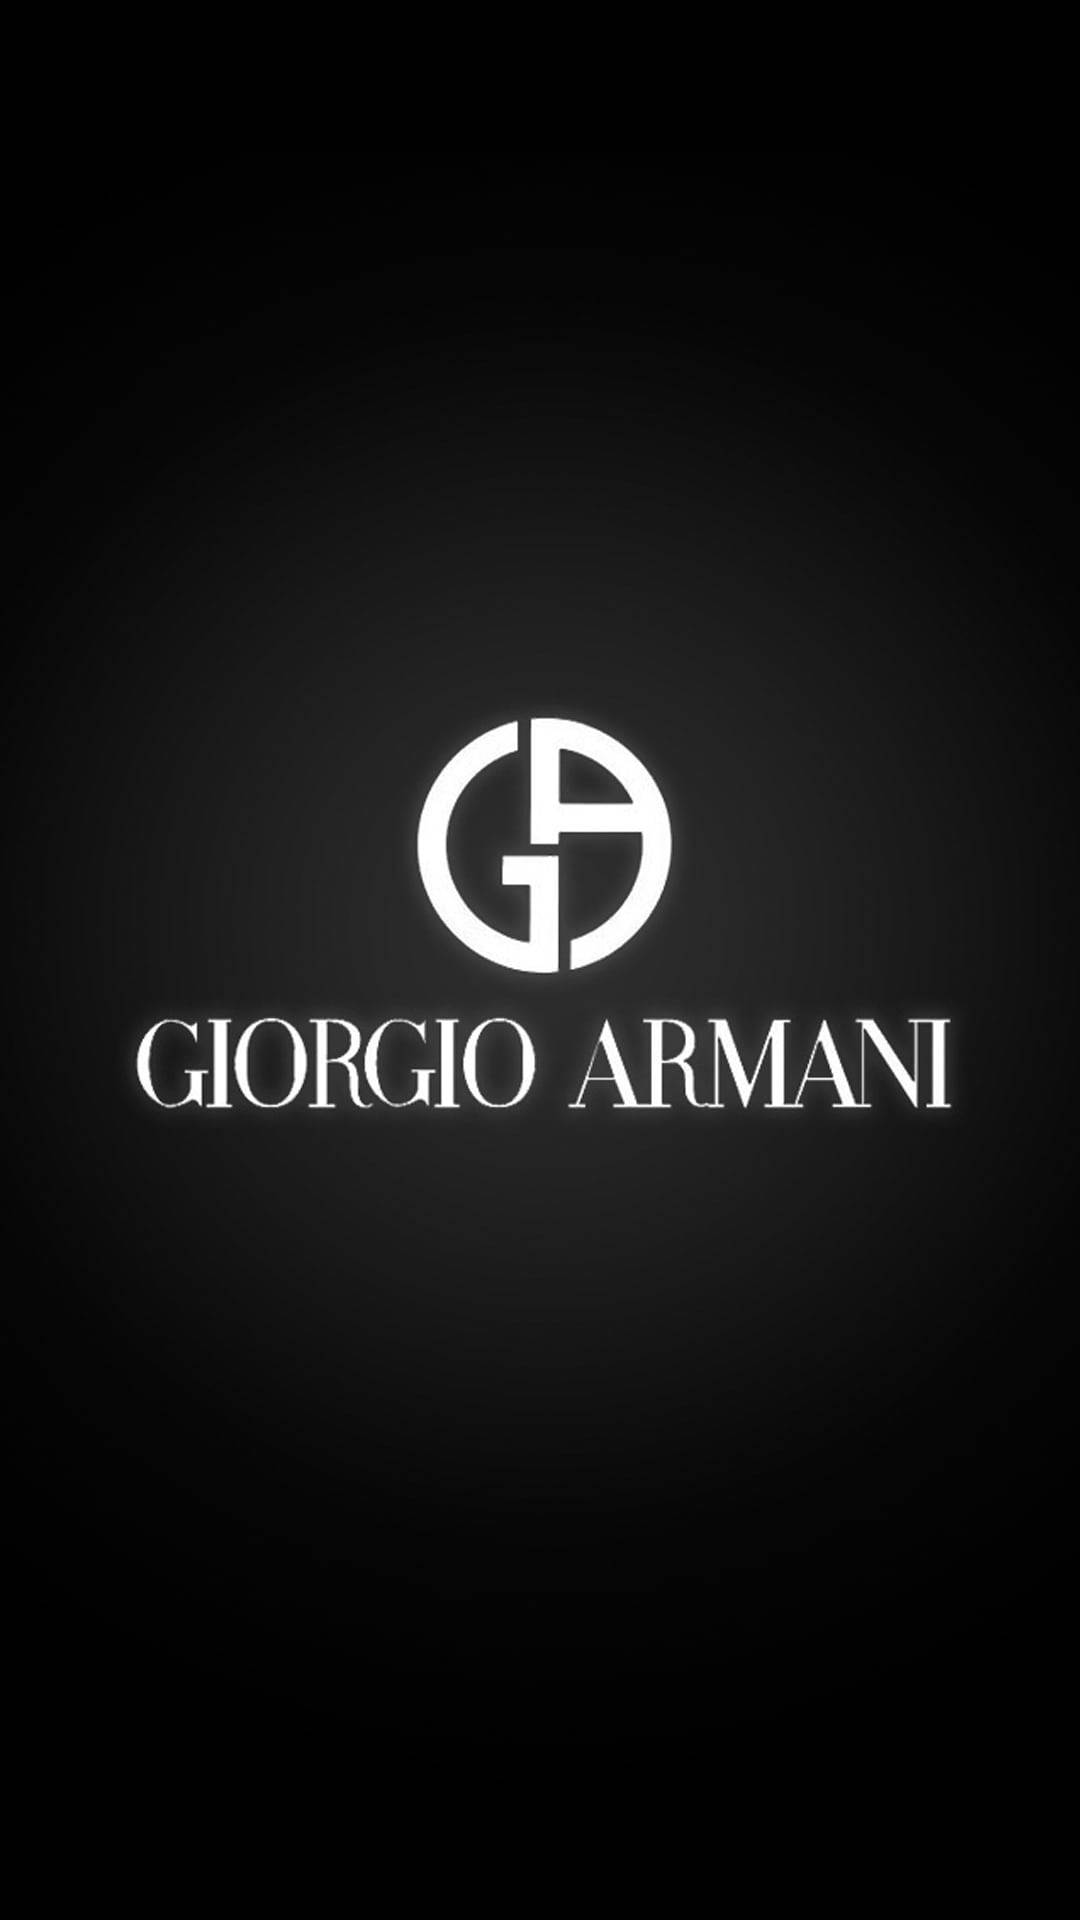 Black And White Giorgio Armani Wallpaper